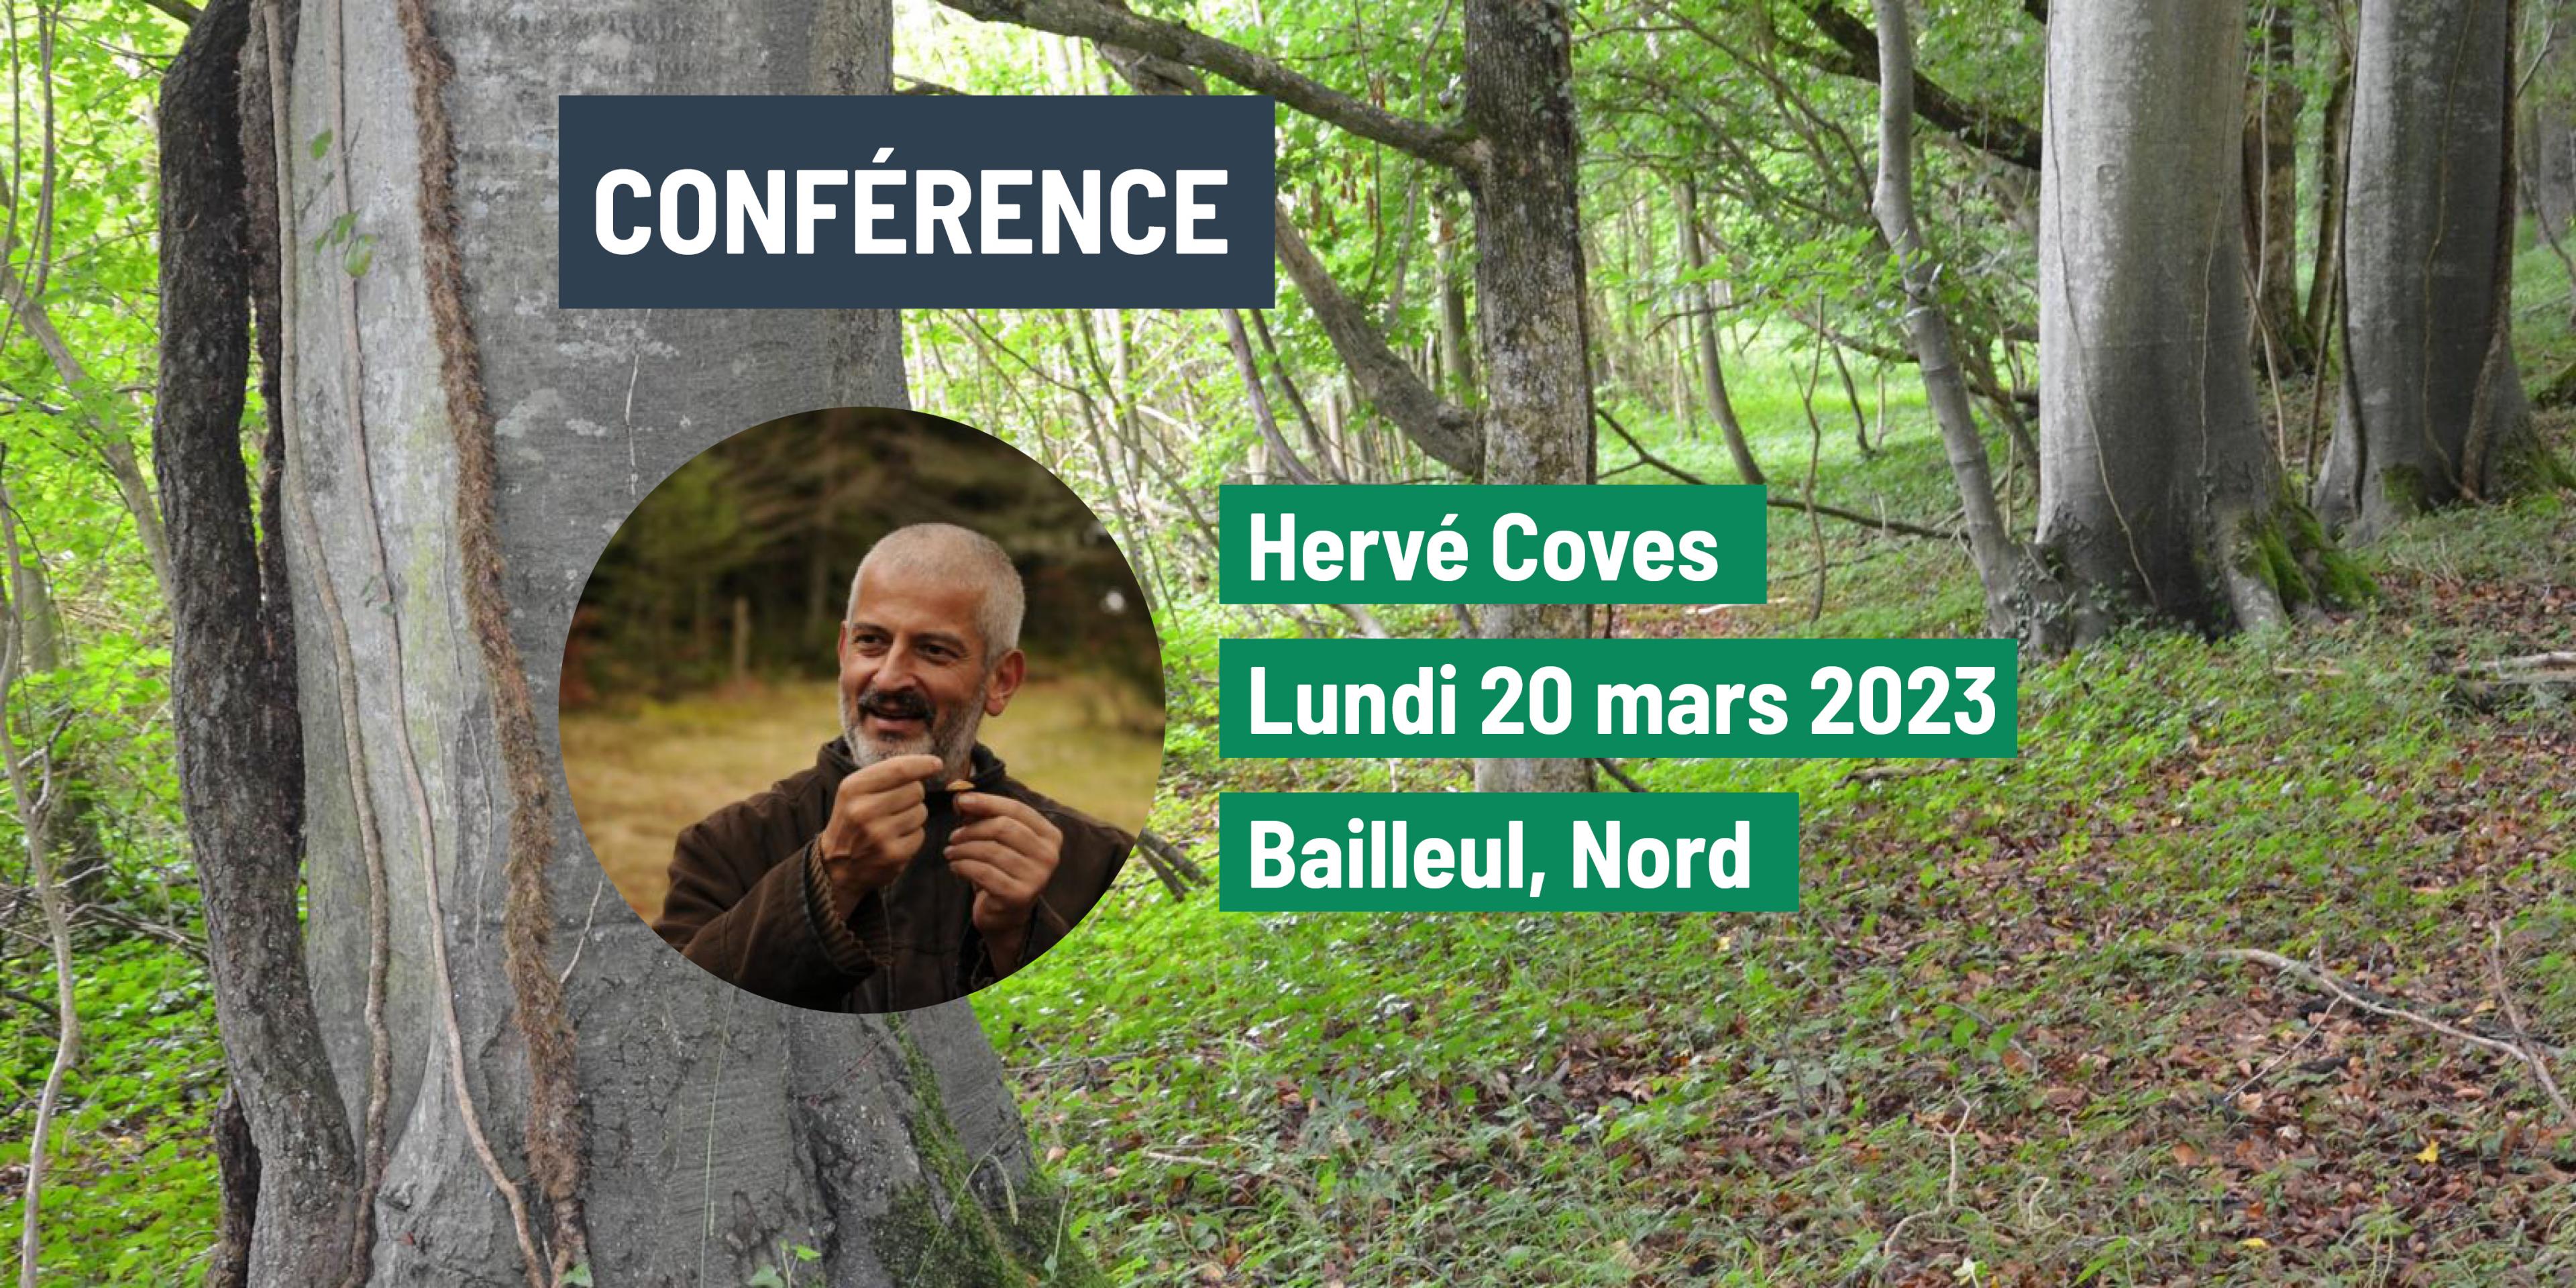 Conférence Hervé Coves : "Changements climatiques et émergence de nouveaux écosystèmes"